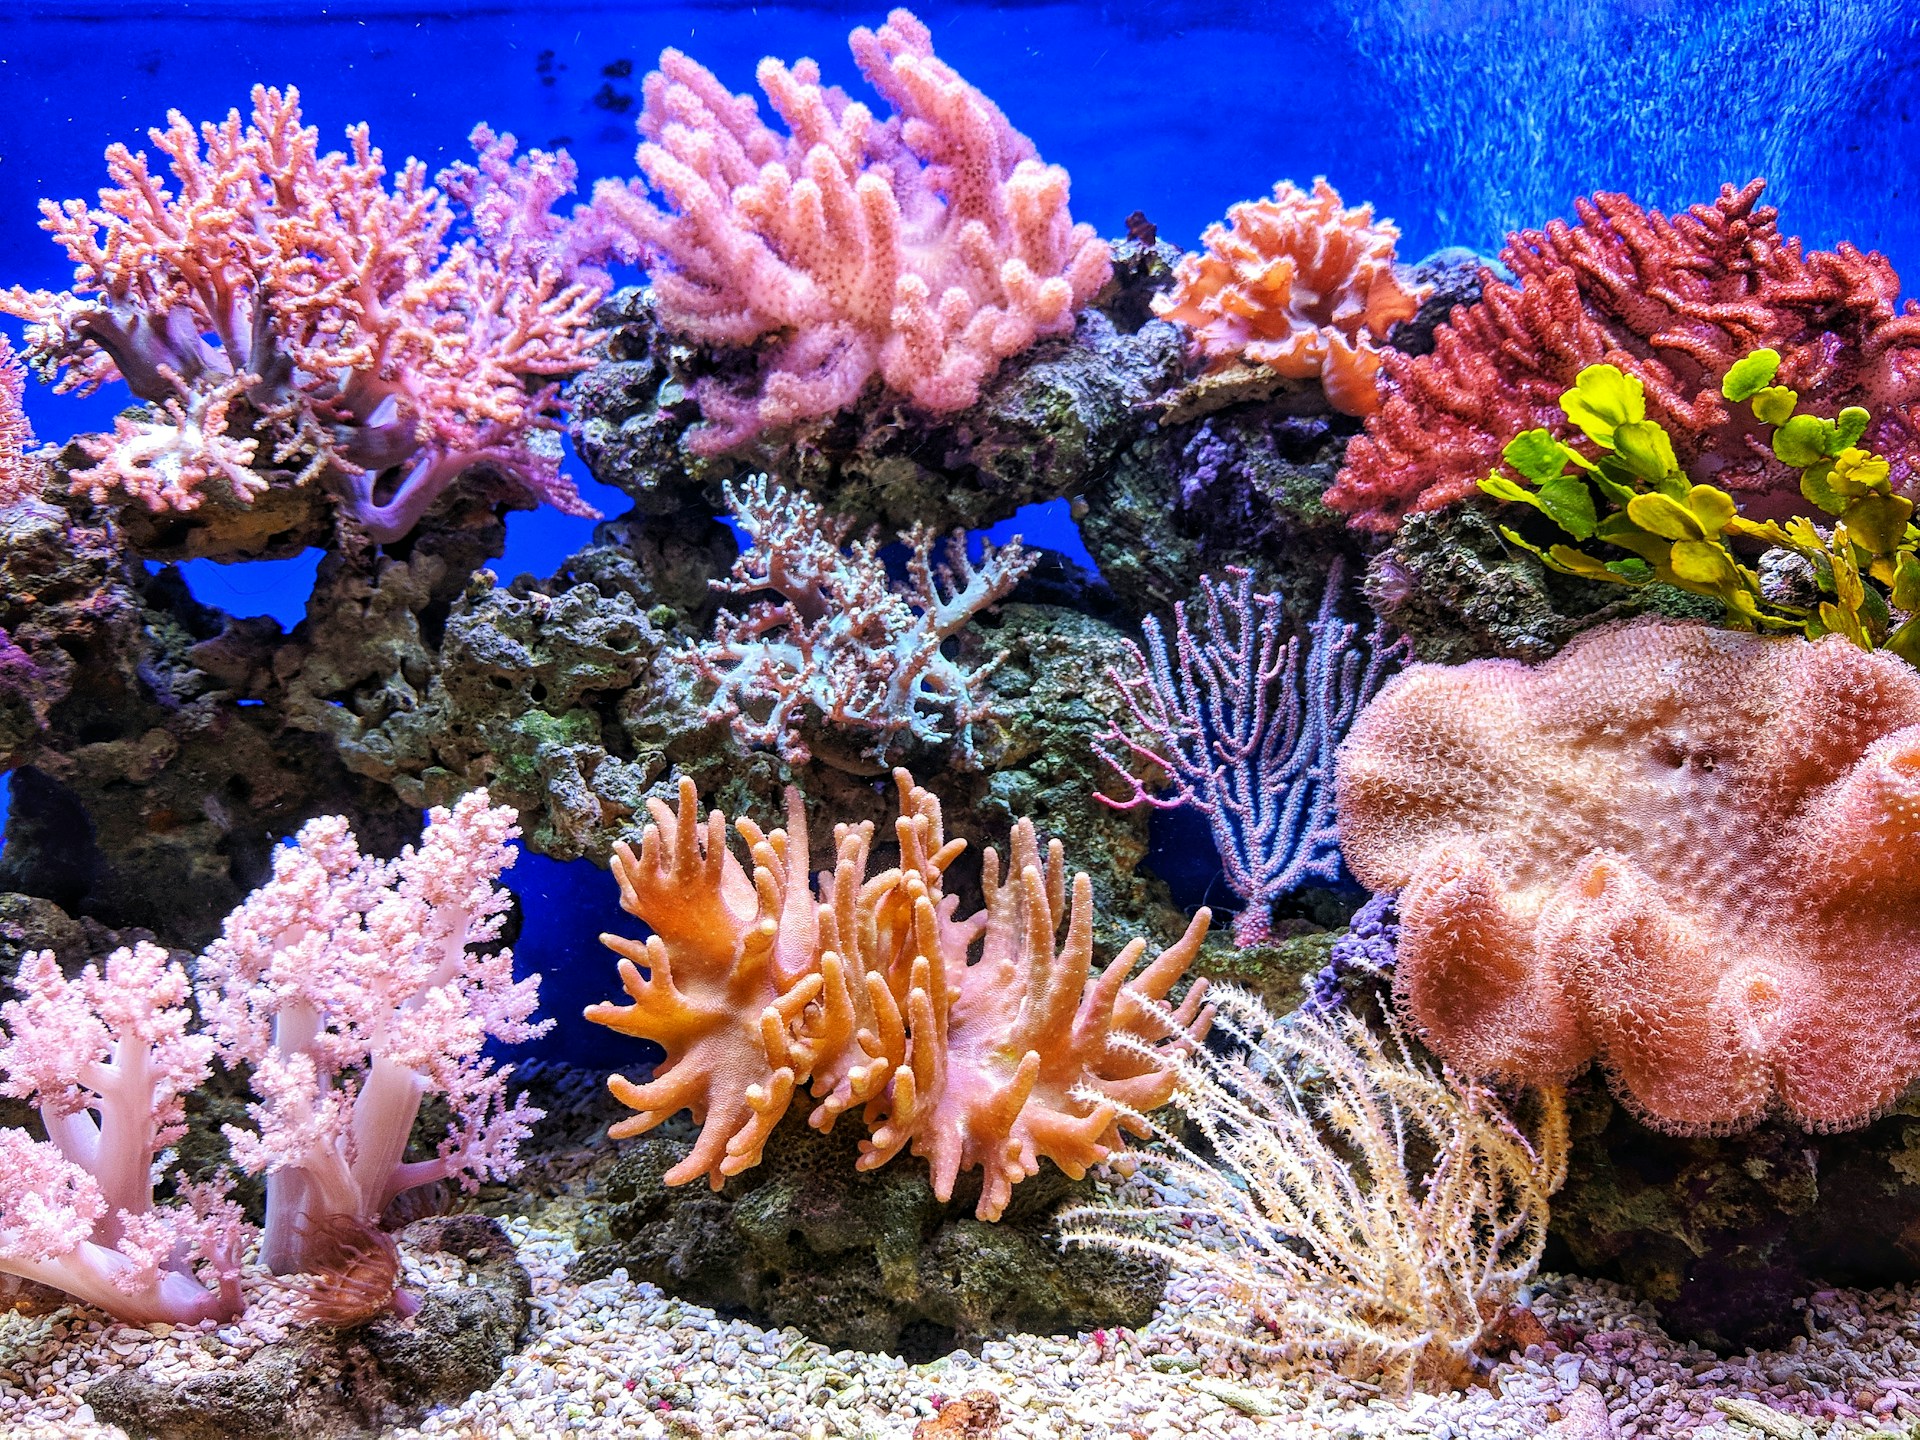 Bienvenidos al sitio online donde los arrecifes también viven